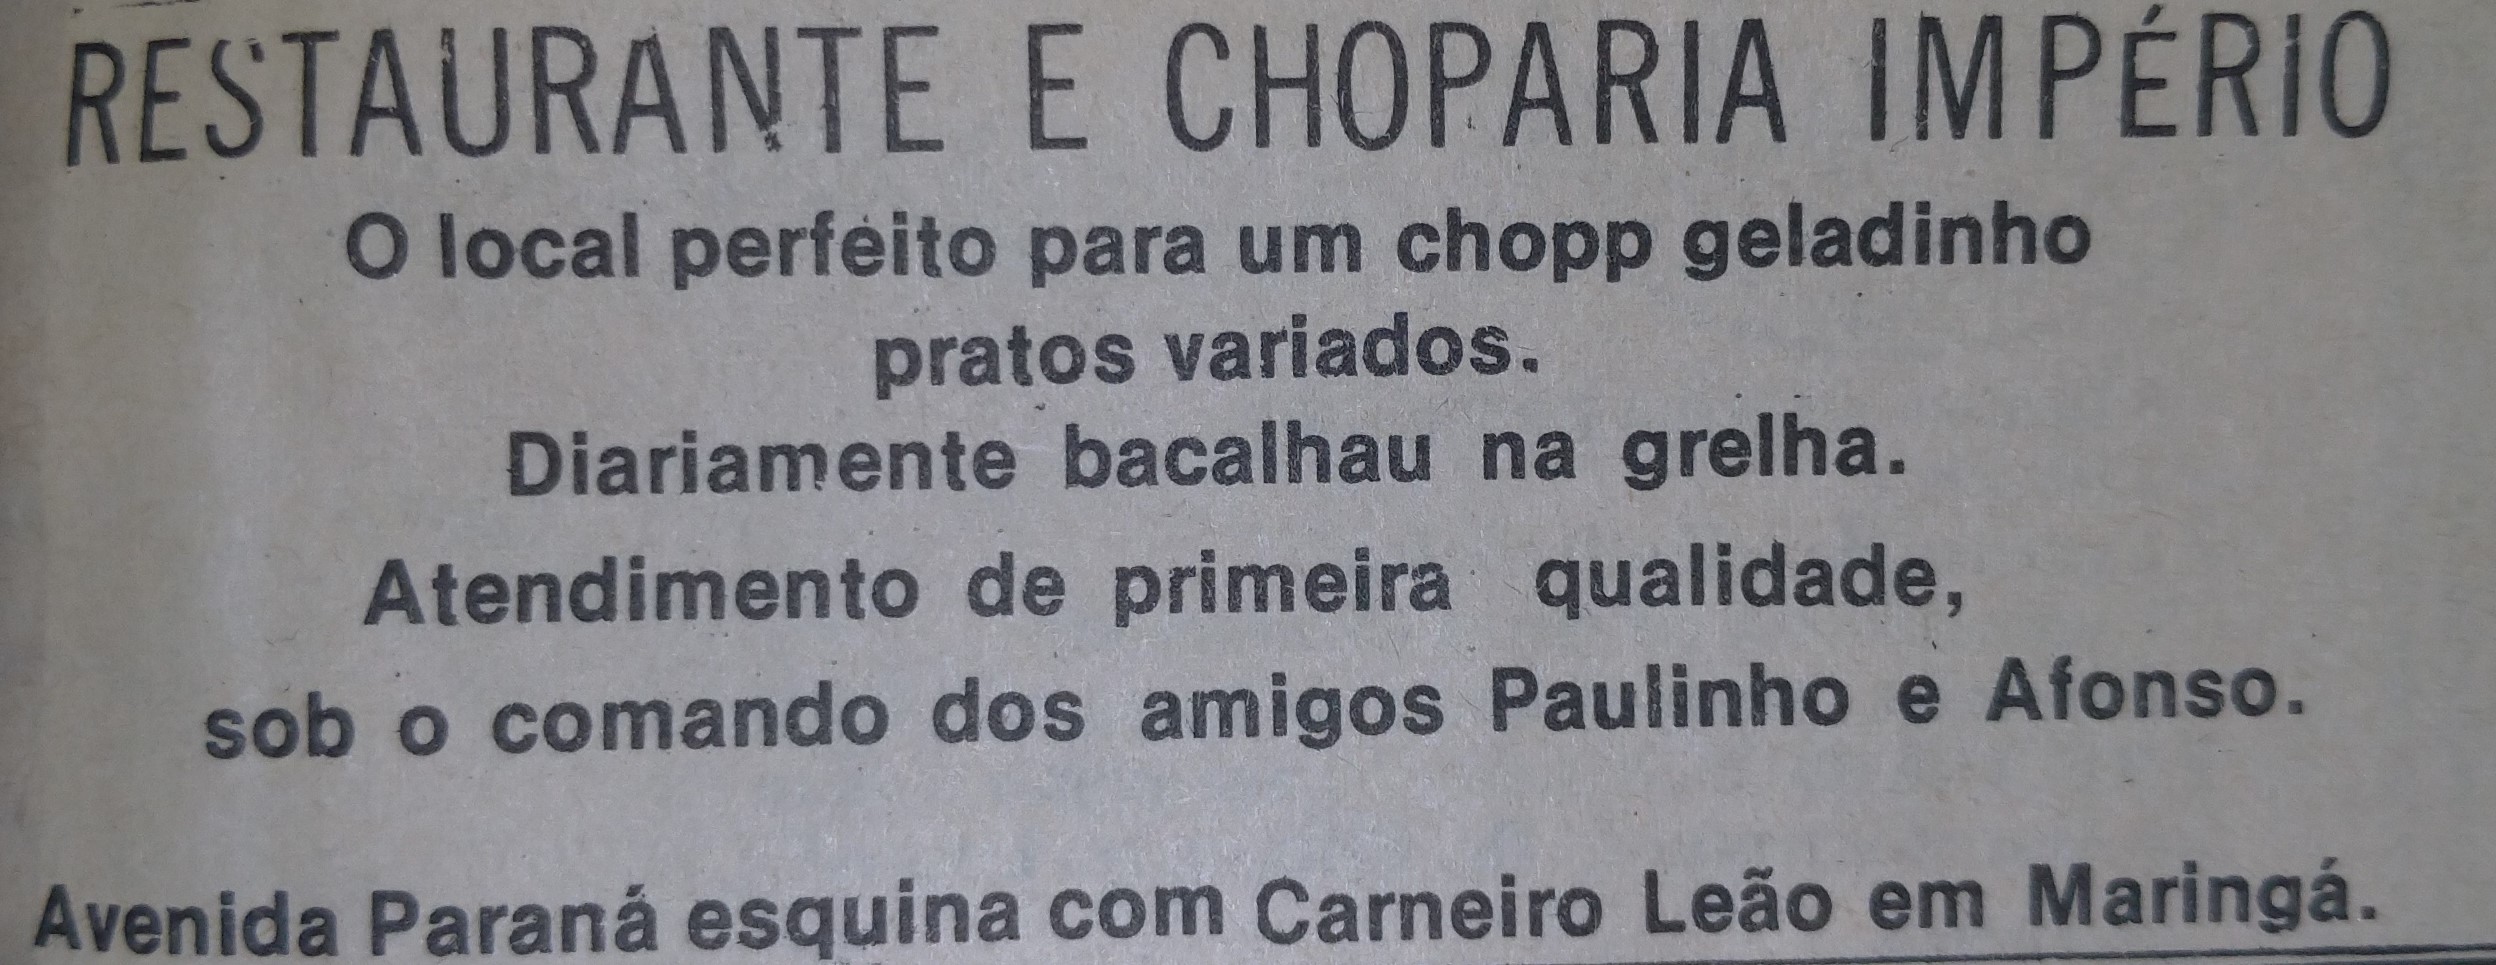 Restaurante, Choperia e Churrascaria Império - Anos 1970